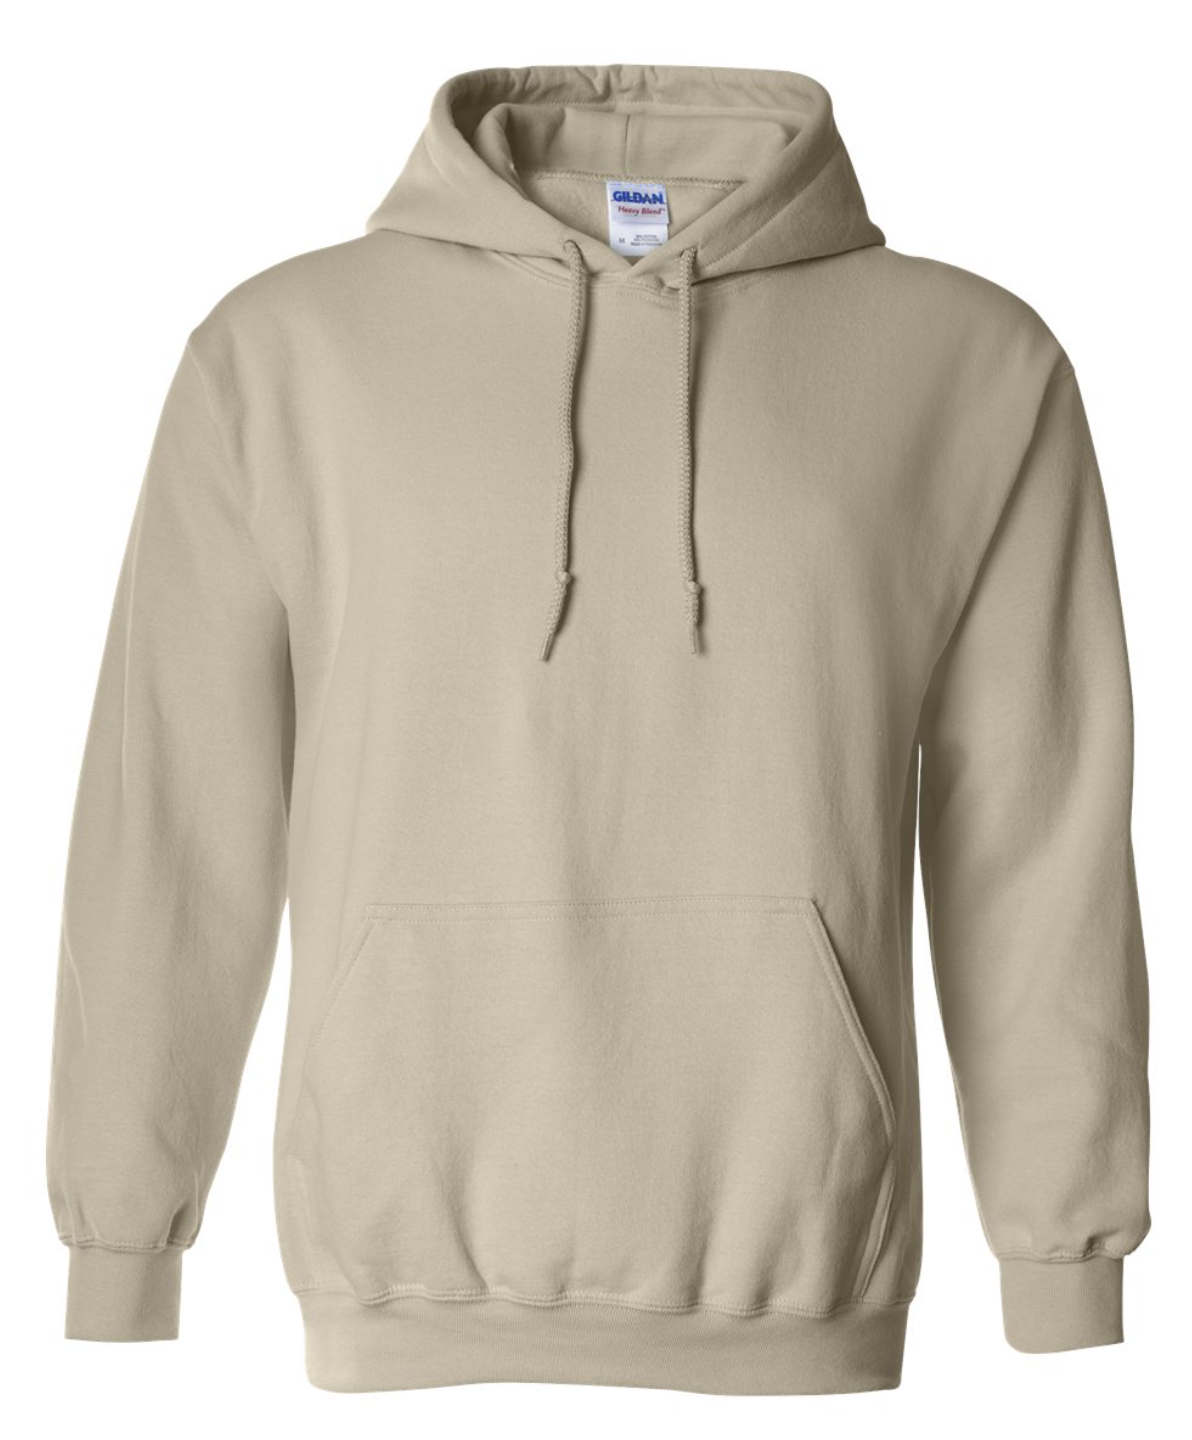 NO NAME or NUMBER --Gildan Heavy Blend Hooded Sweatshirt